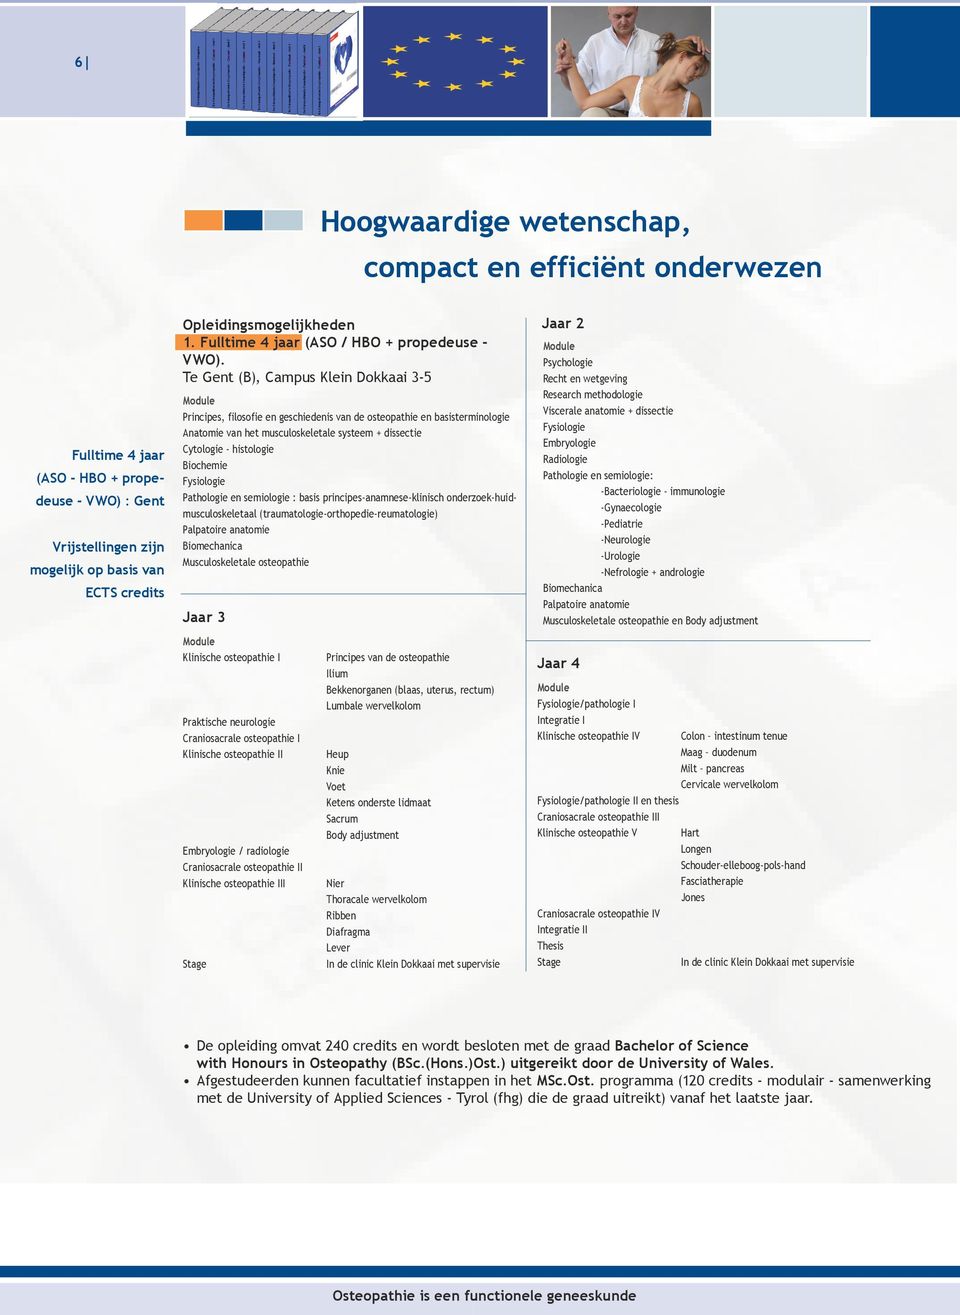 Te Gent (B), Campus Klein Dokkaai 3-5 Principes, filosofie en geschiedenis van de osteopathie en basisterminologie Anatomie van het musculoskeletale systeem + dissectie Cytologie - histologie